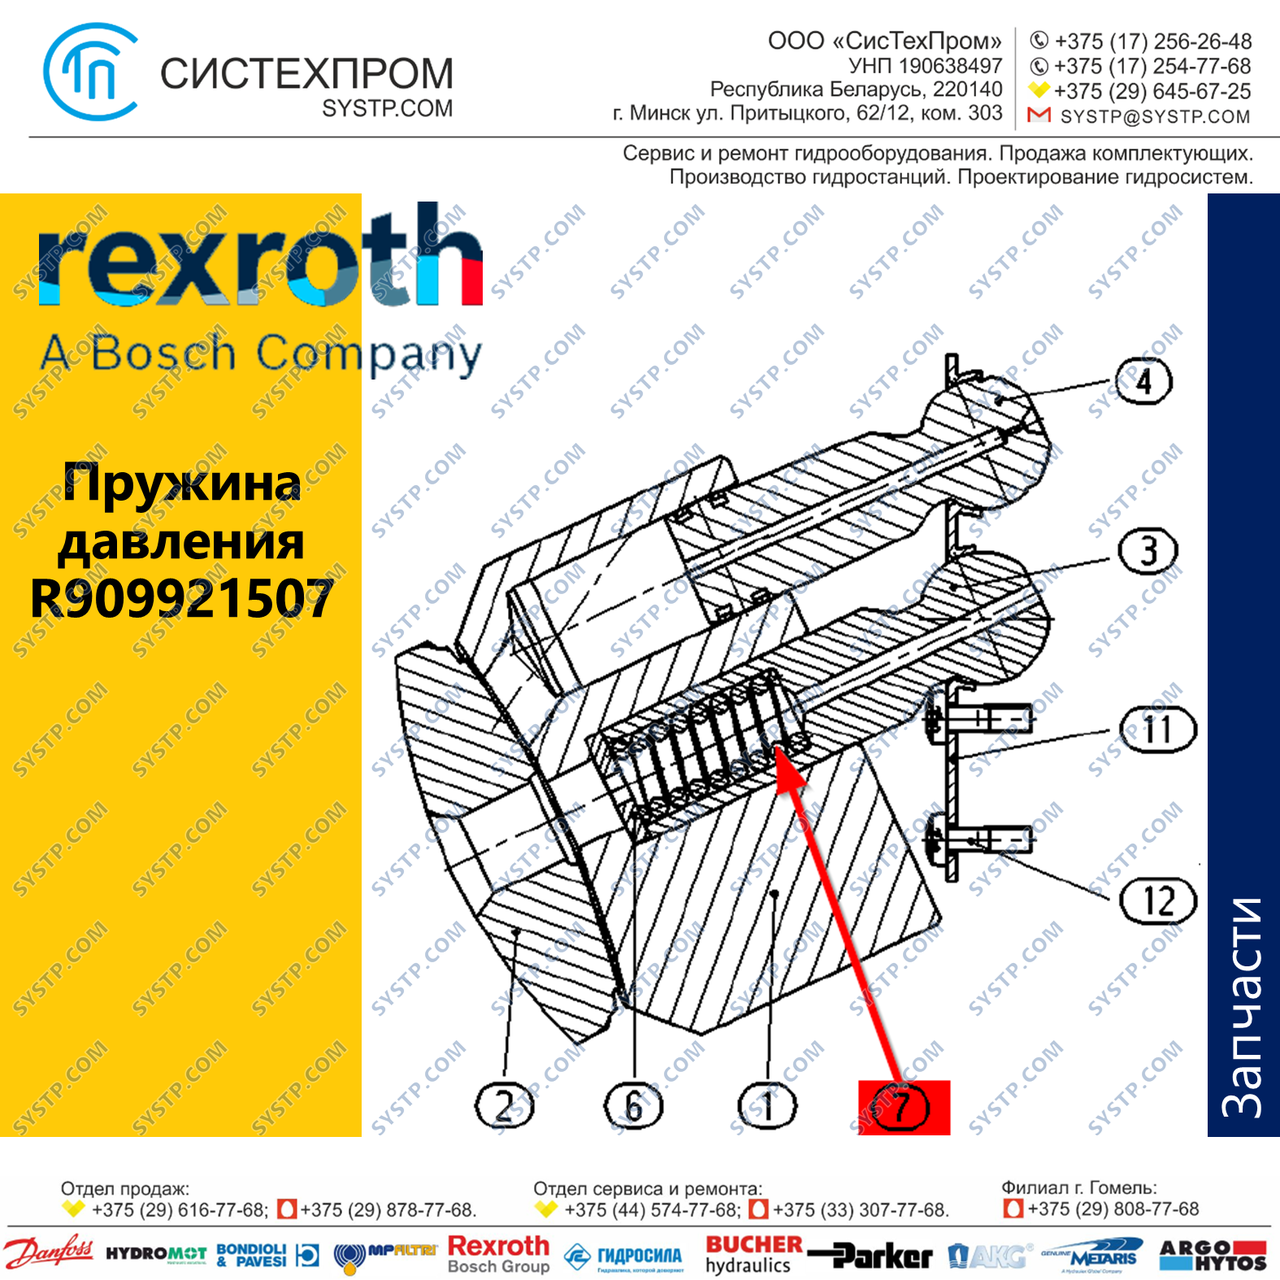 Пружина давления R909921507 Bosch Rexroth